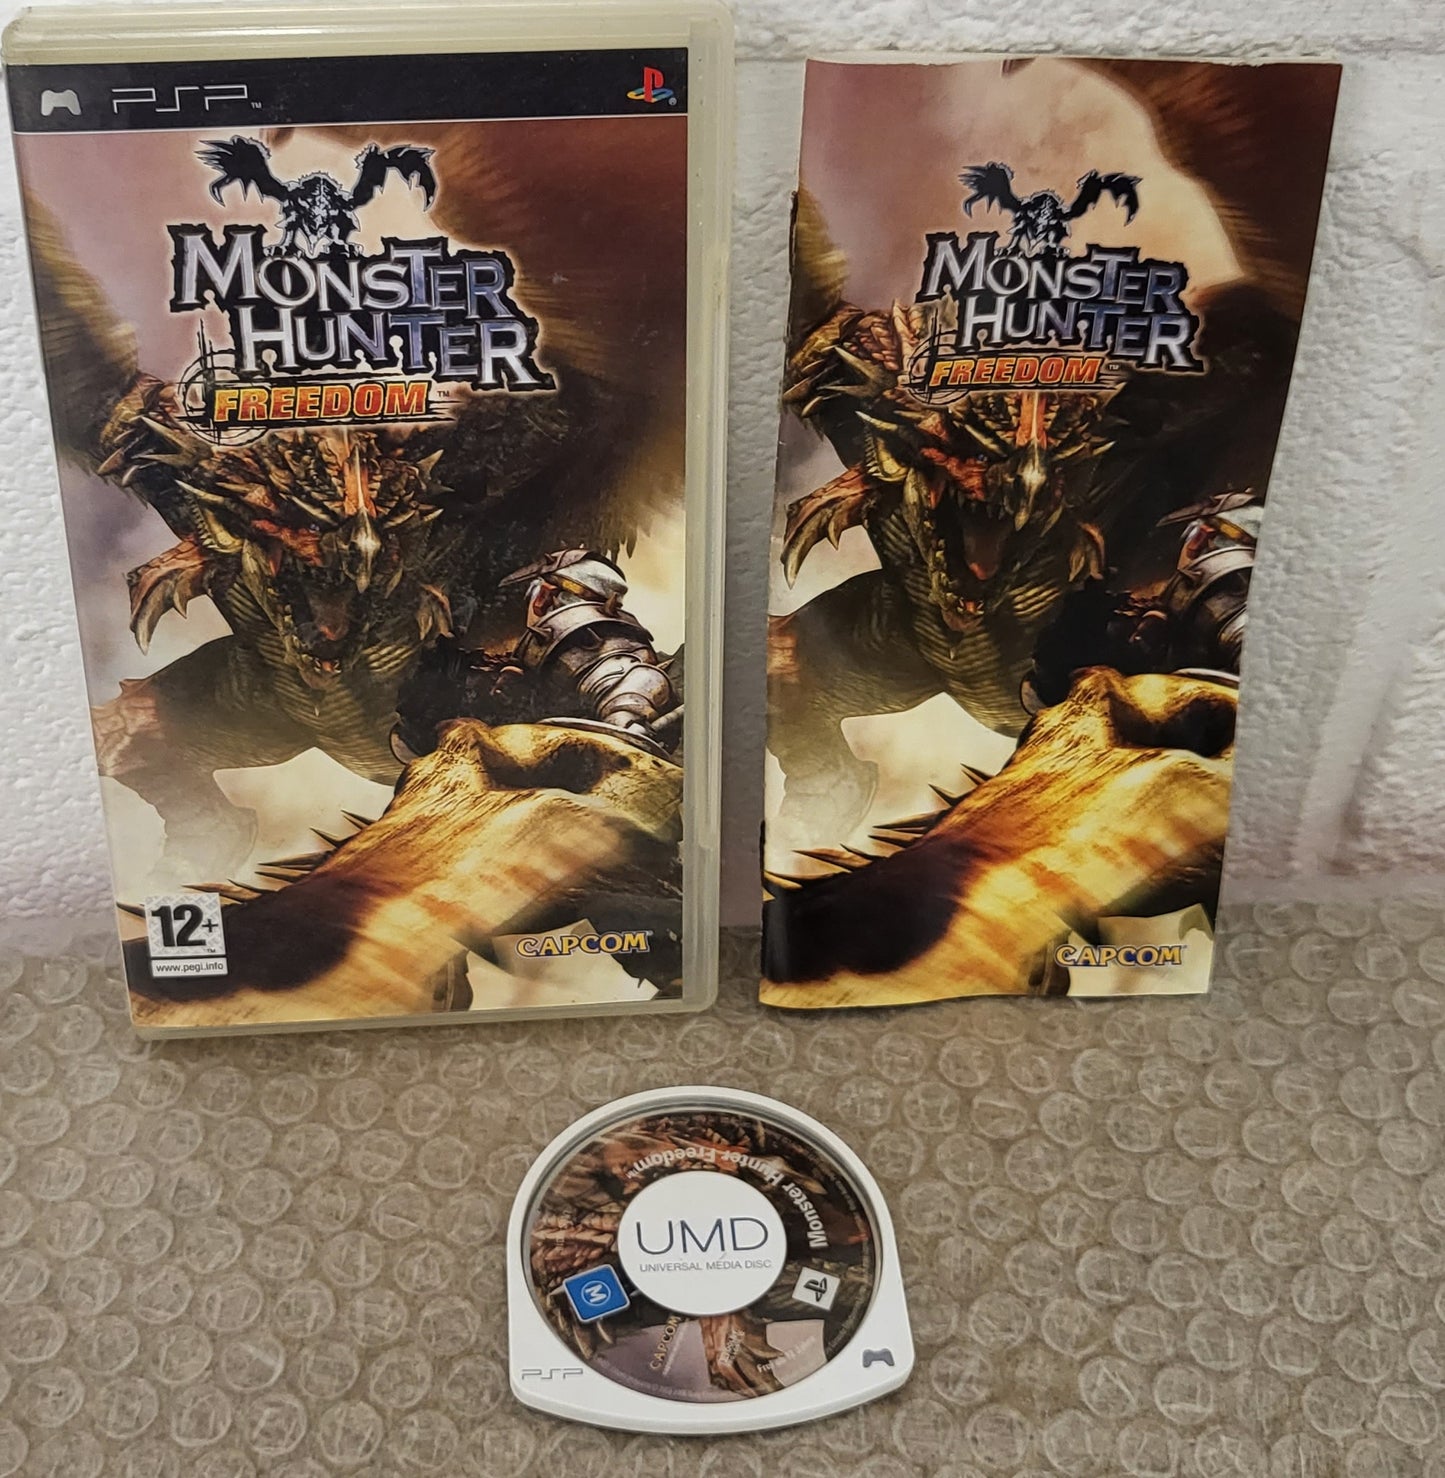 Monster Hunter Freedom Sony PSP Game